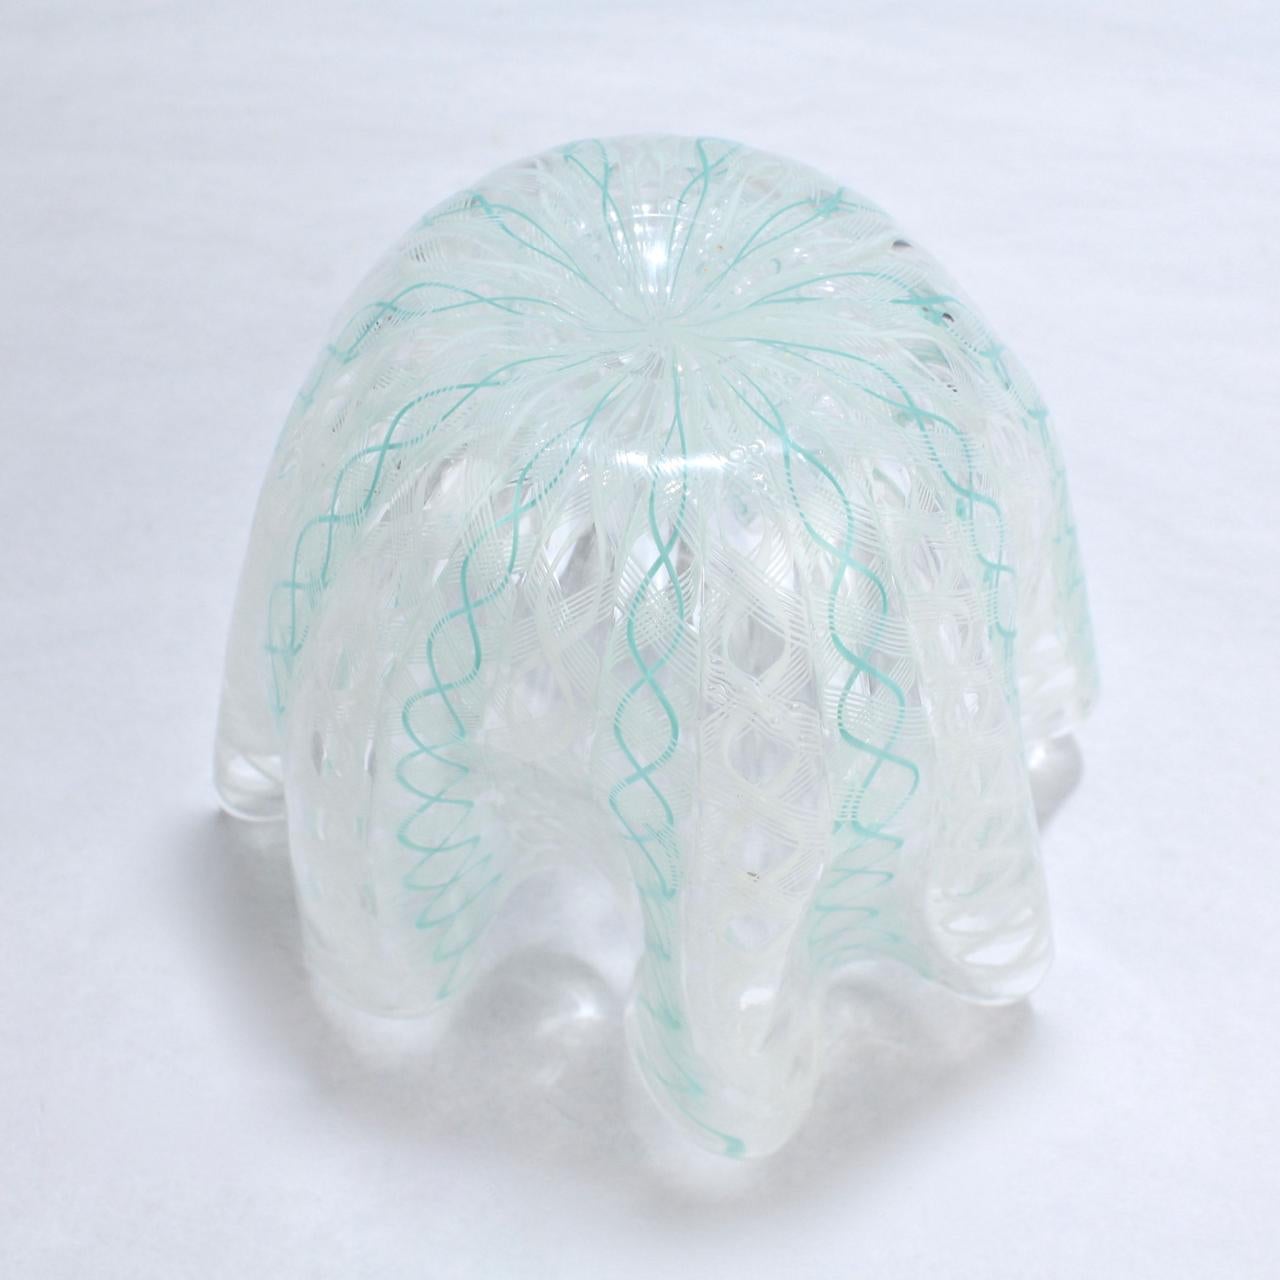 Italian Fazzoletto Handkerchief Vase by Fulvio Bianconi & Paolo Venini for Venini Glass